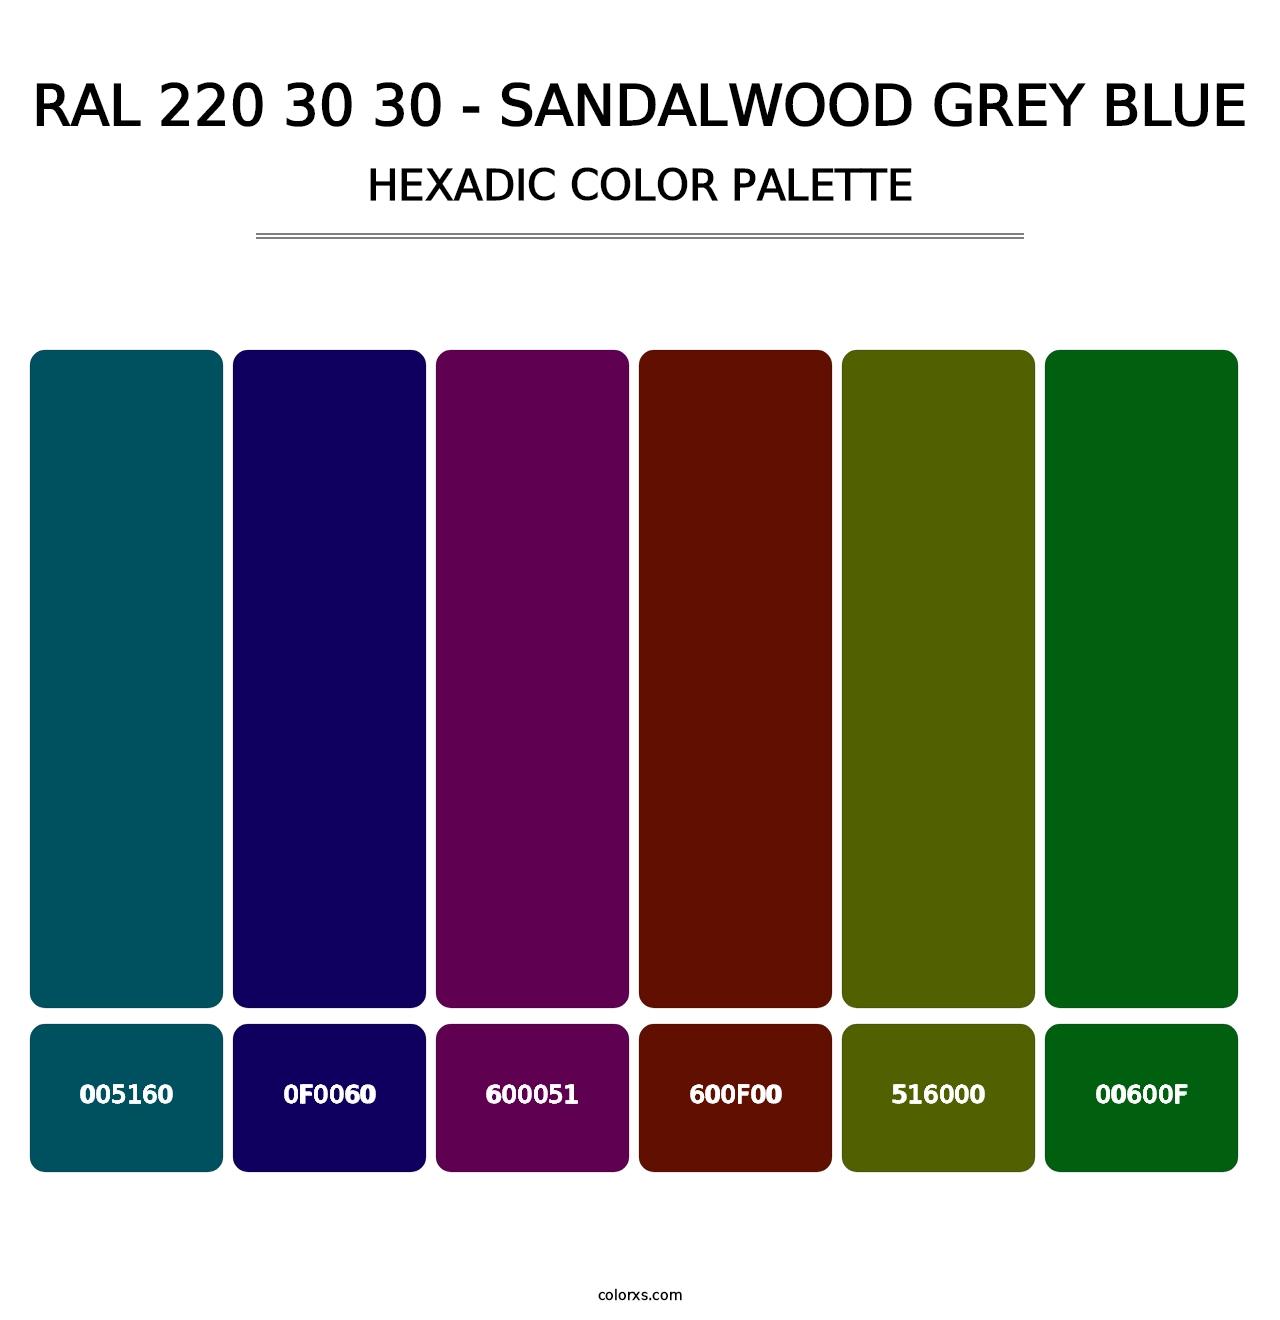 RAL 220 30 30 - Sandalwood Grey Blue - Hexadic Color Palette